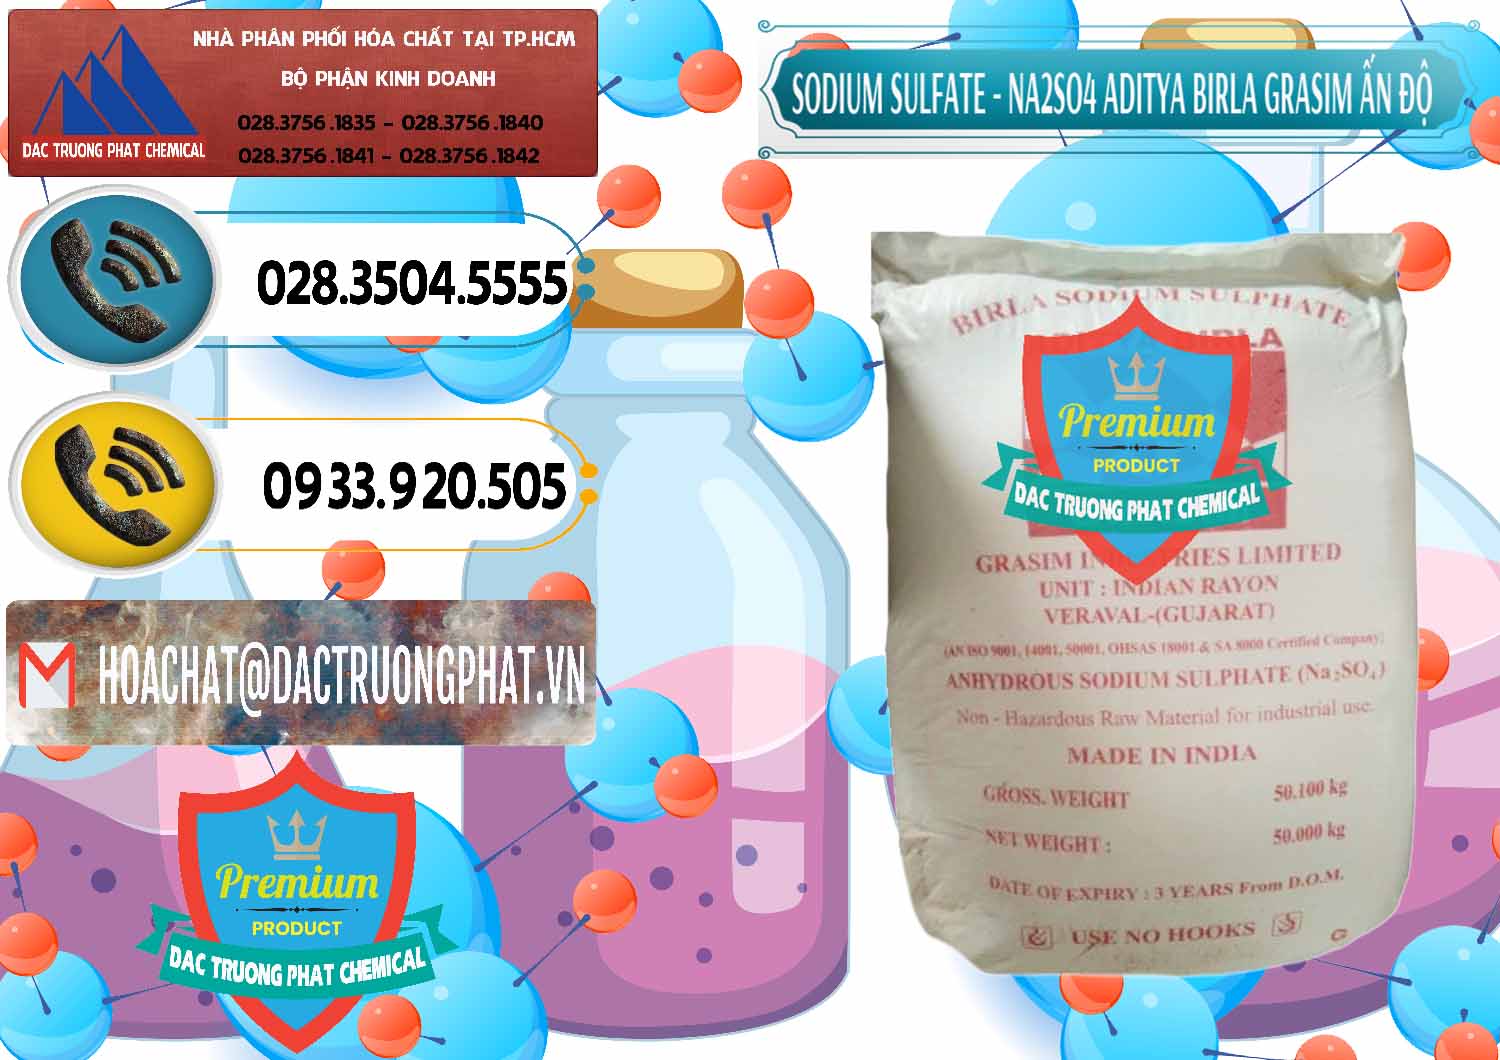 Chuyên cung ứng _ bán Sodium Sulphate - Muối Sunfat Na2SO4 Grasim Ấn Độ India - 0356 - Công ty kinh doanh ( cung cấp ) hóa chất tại TP.HCM - hoachatdetnhuom.vn